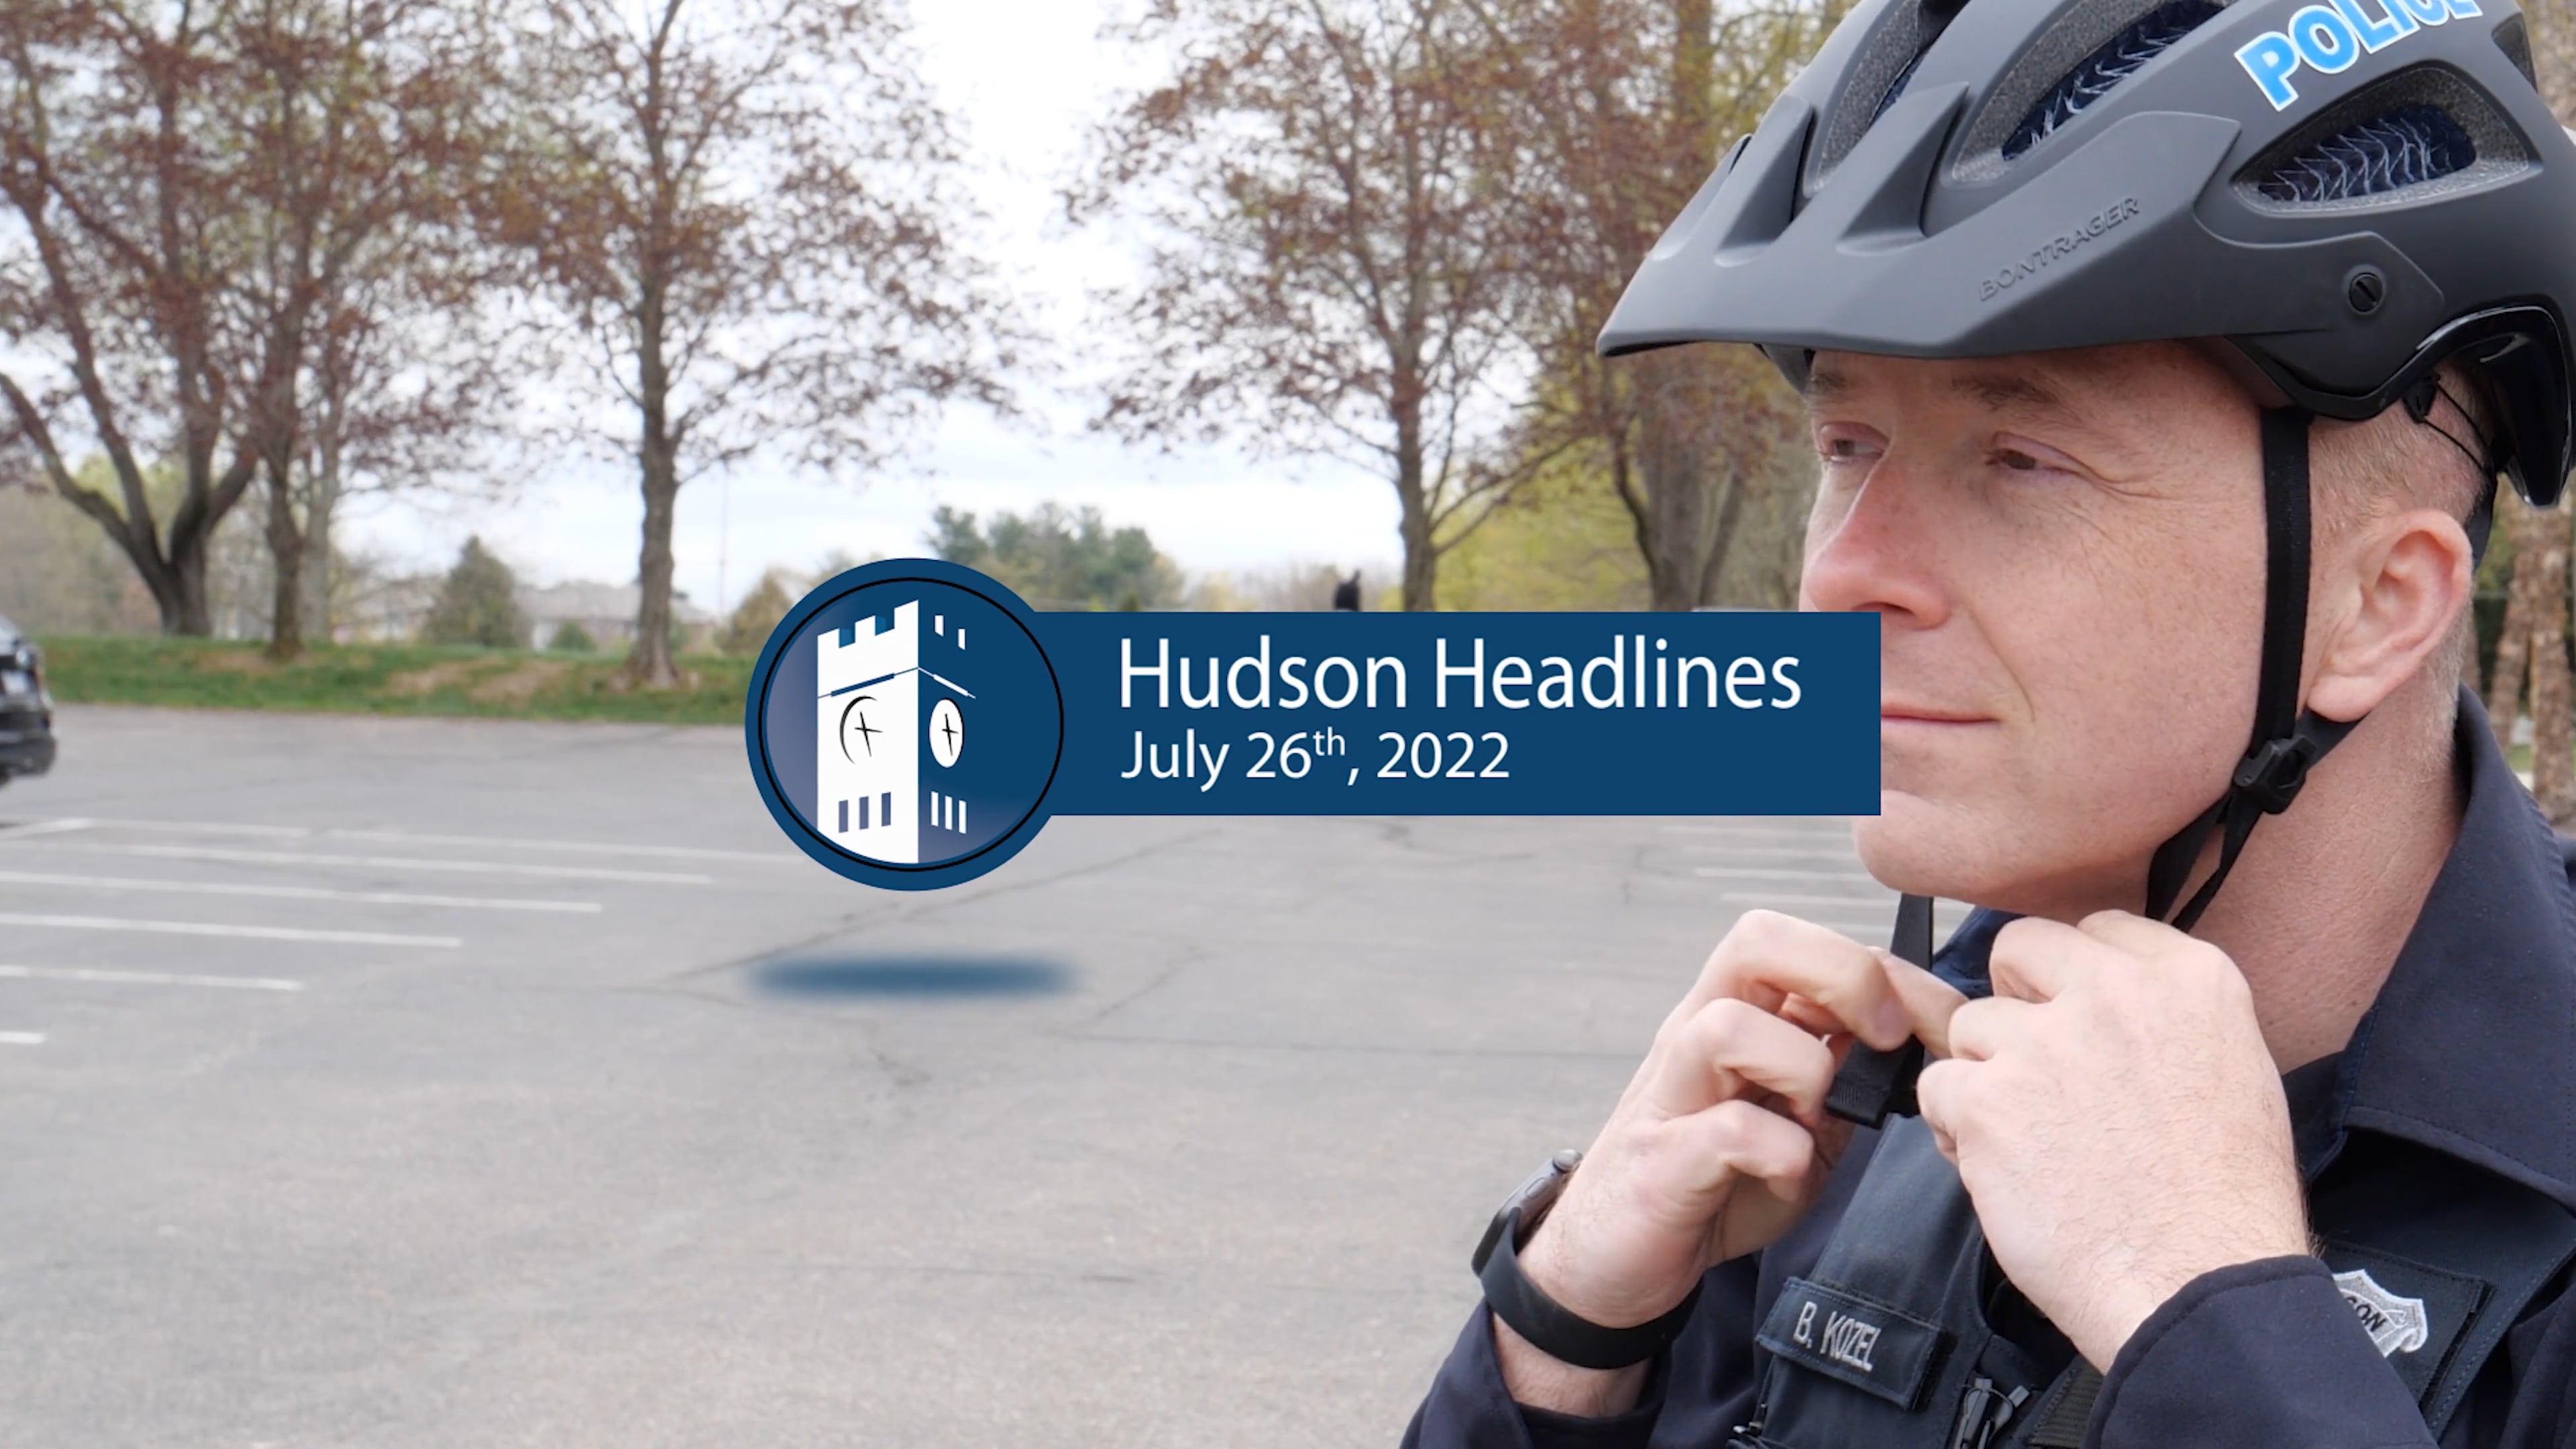 Hudson Headlines: Pedestrian & Bike Safety 2022